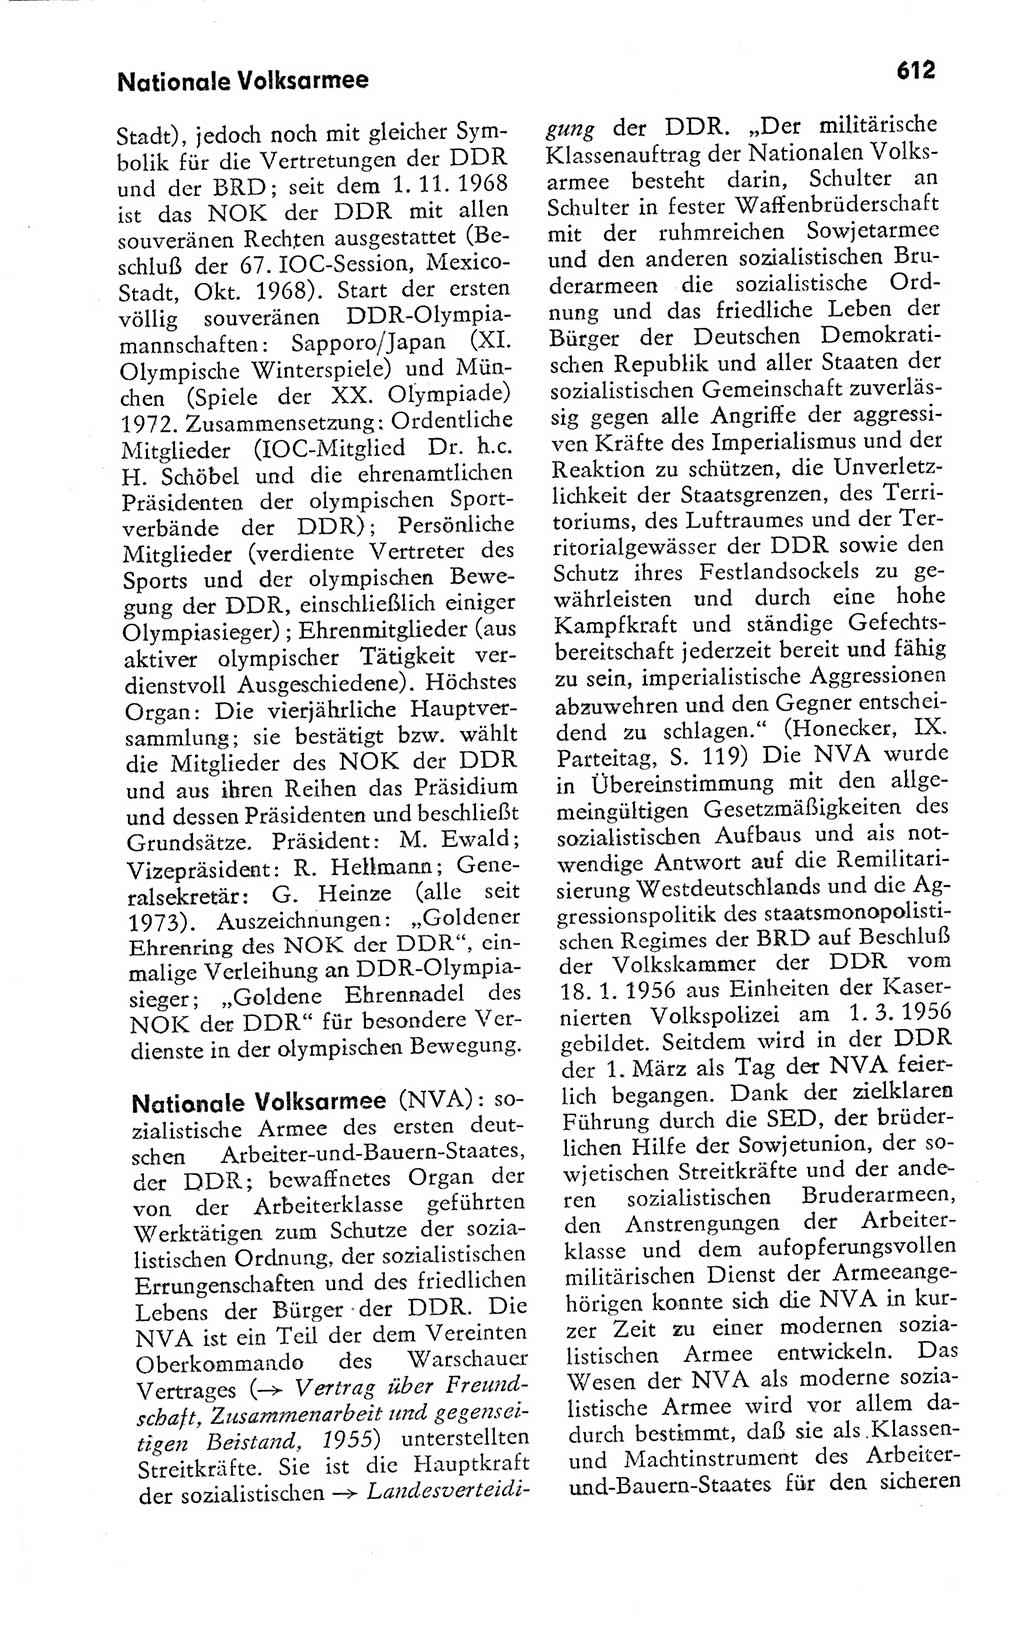 Kleines politisches Wörterbuch [Deutsche Demokratische Republik (DDR)] 1978, Seite 612 (Kl. pol. Wb. DDR 1978, S. 612)